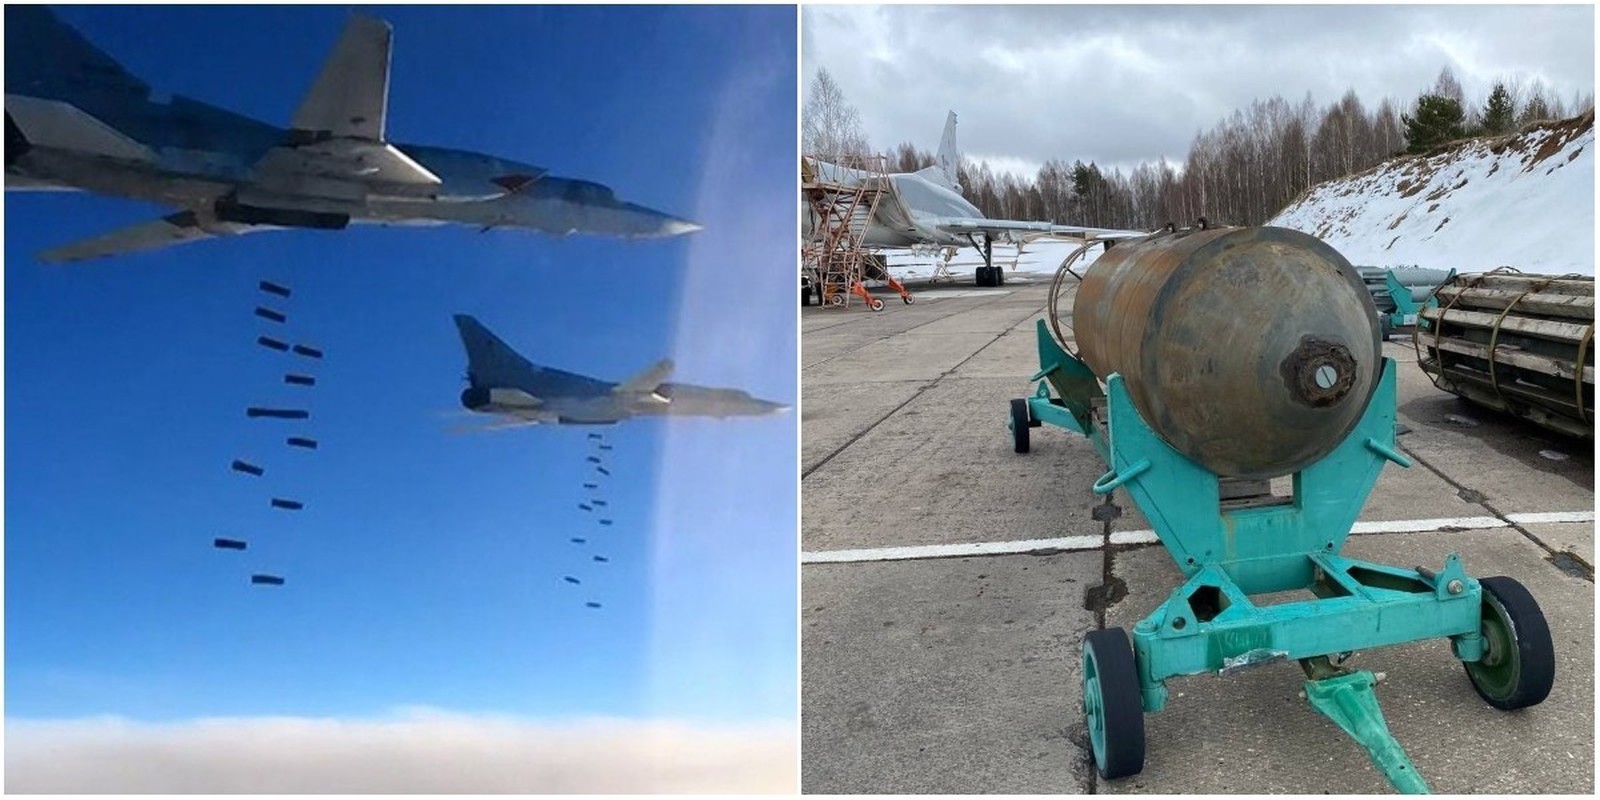 View - 	Siêu bom FAB-3000 của Nga trang bị bộ cánh lượn sắp tham chiến